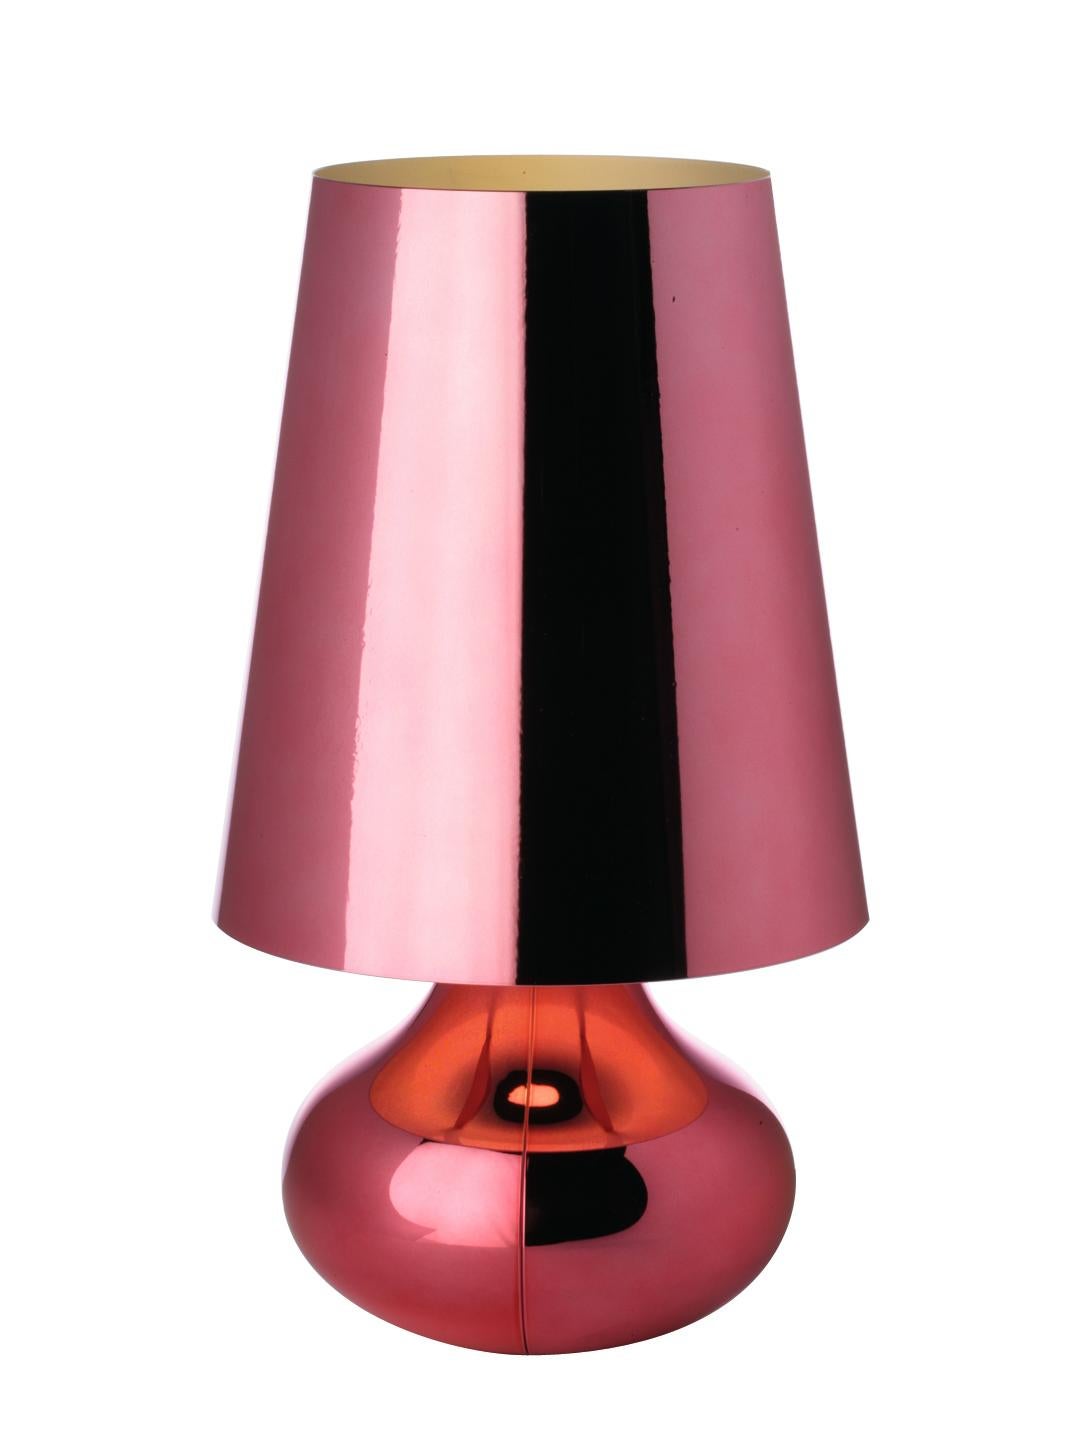 La lampe de table typique des années 70 revêt une nouvelle forme et une nouvelle couleur. La lampe Cindy, avec son abat-jour conique et sa base arrondie en forme de goutte d'eau, est disponible dans une large gamme de tons métalliques mats. La